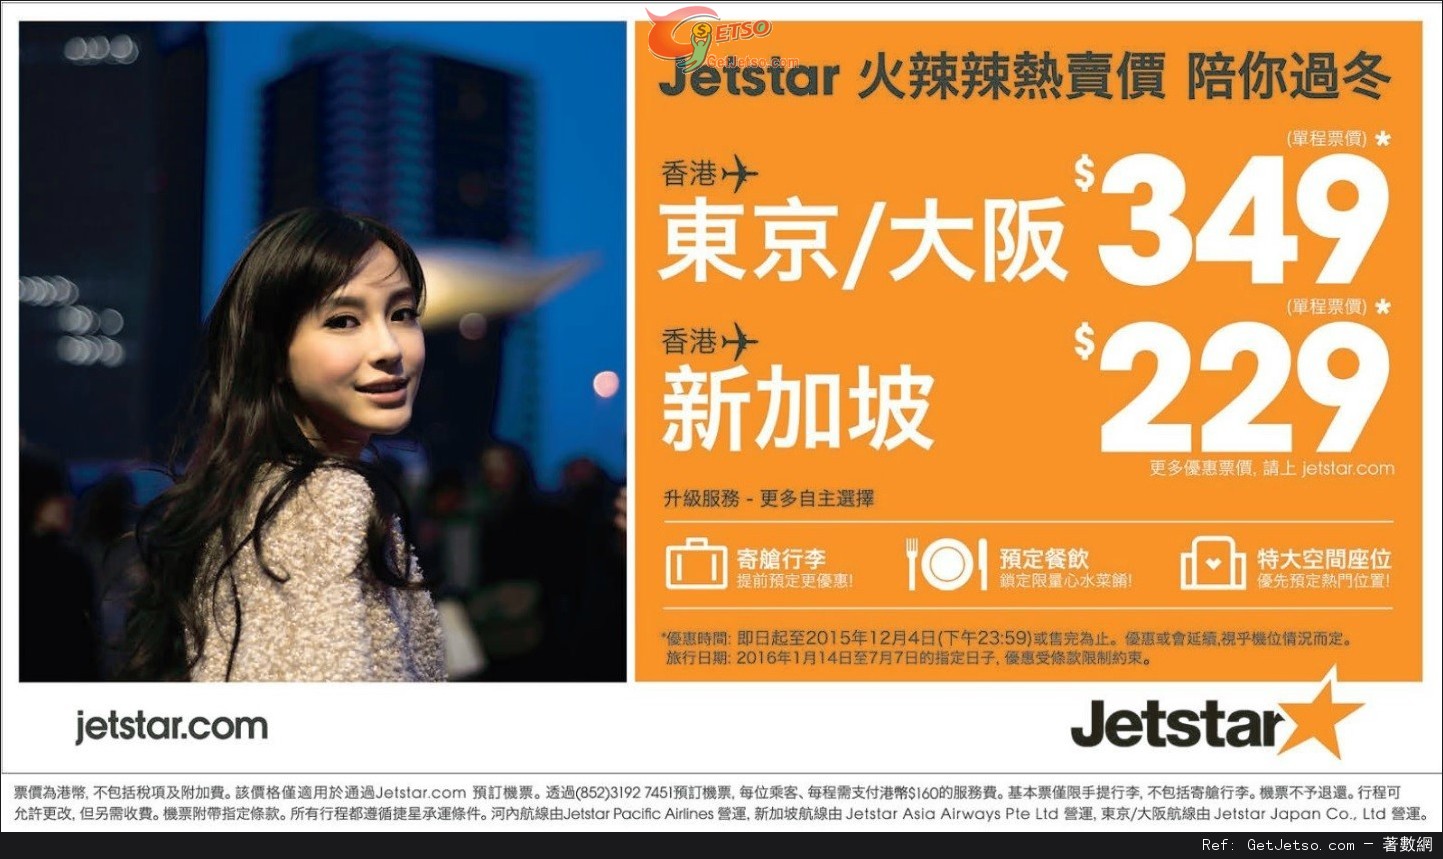 低至9單程新加坡/9單程日本機票優惠@Jetstar 捷星航空(至15年12月4日)圖片1